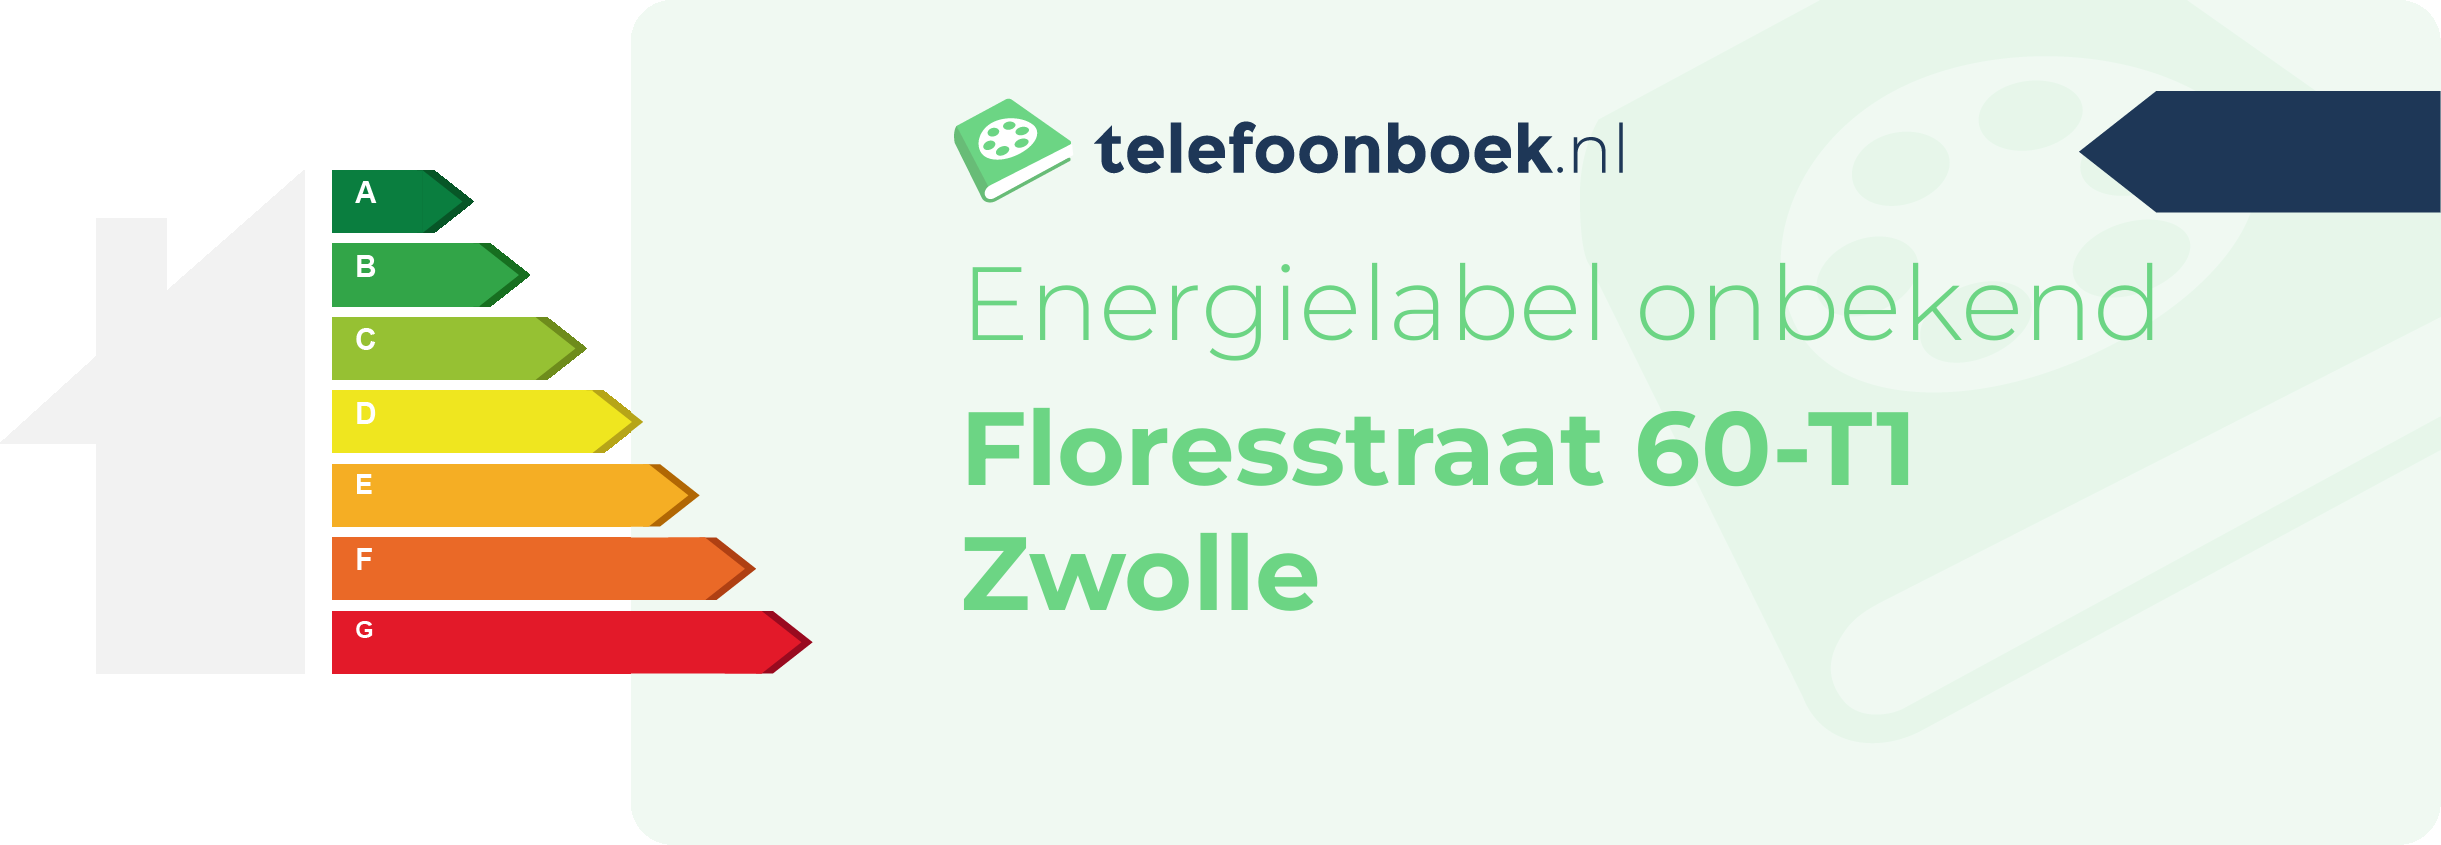 Energielabel Floresstraat 60-T1 Zwolle